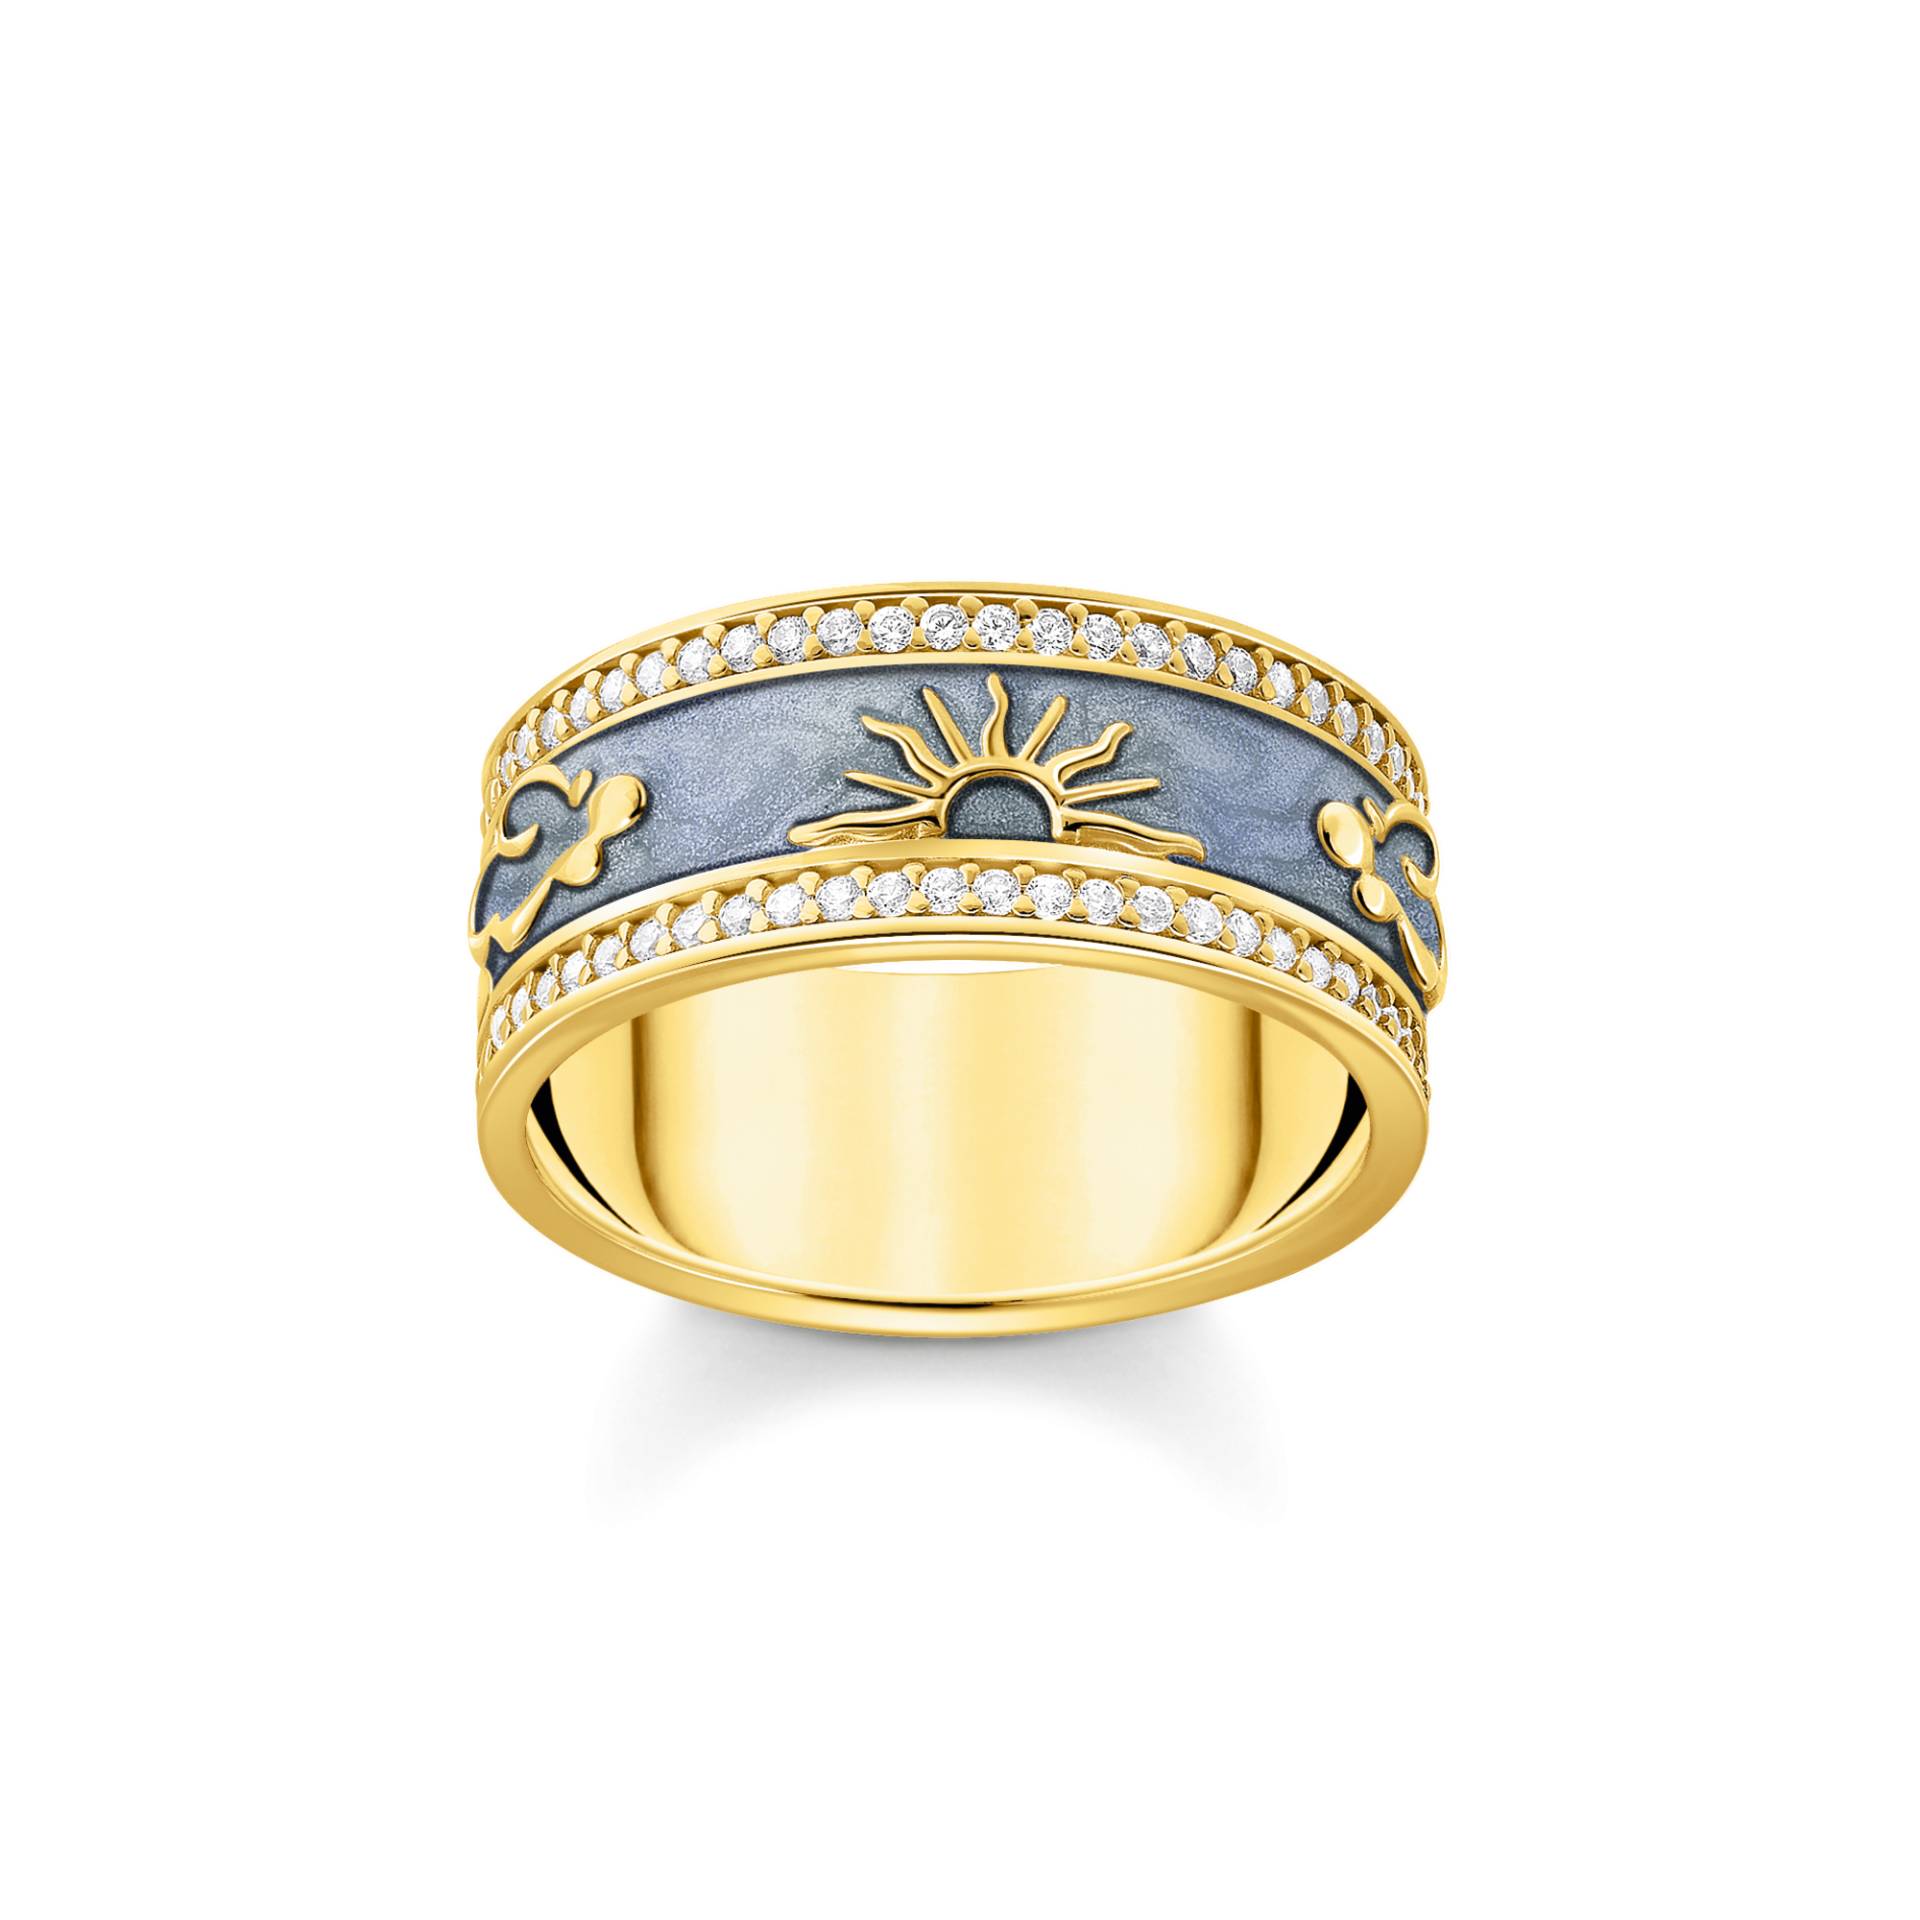 Thomas Sabo Ring blau mit kosmischen Symbolen vergoldet blau TR2450-565-1-58 von Thomas Sabo